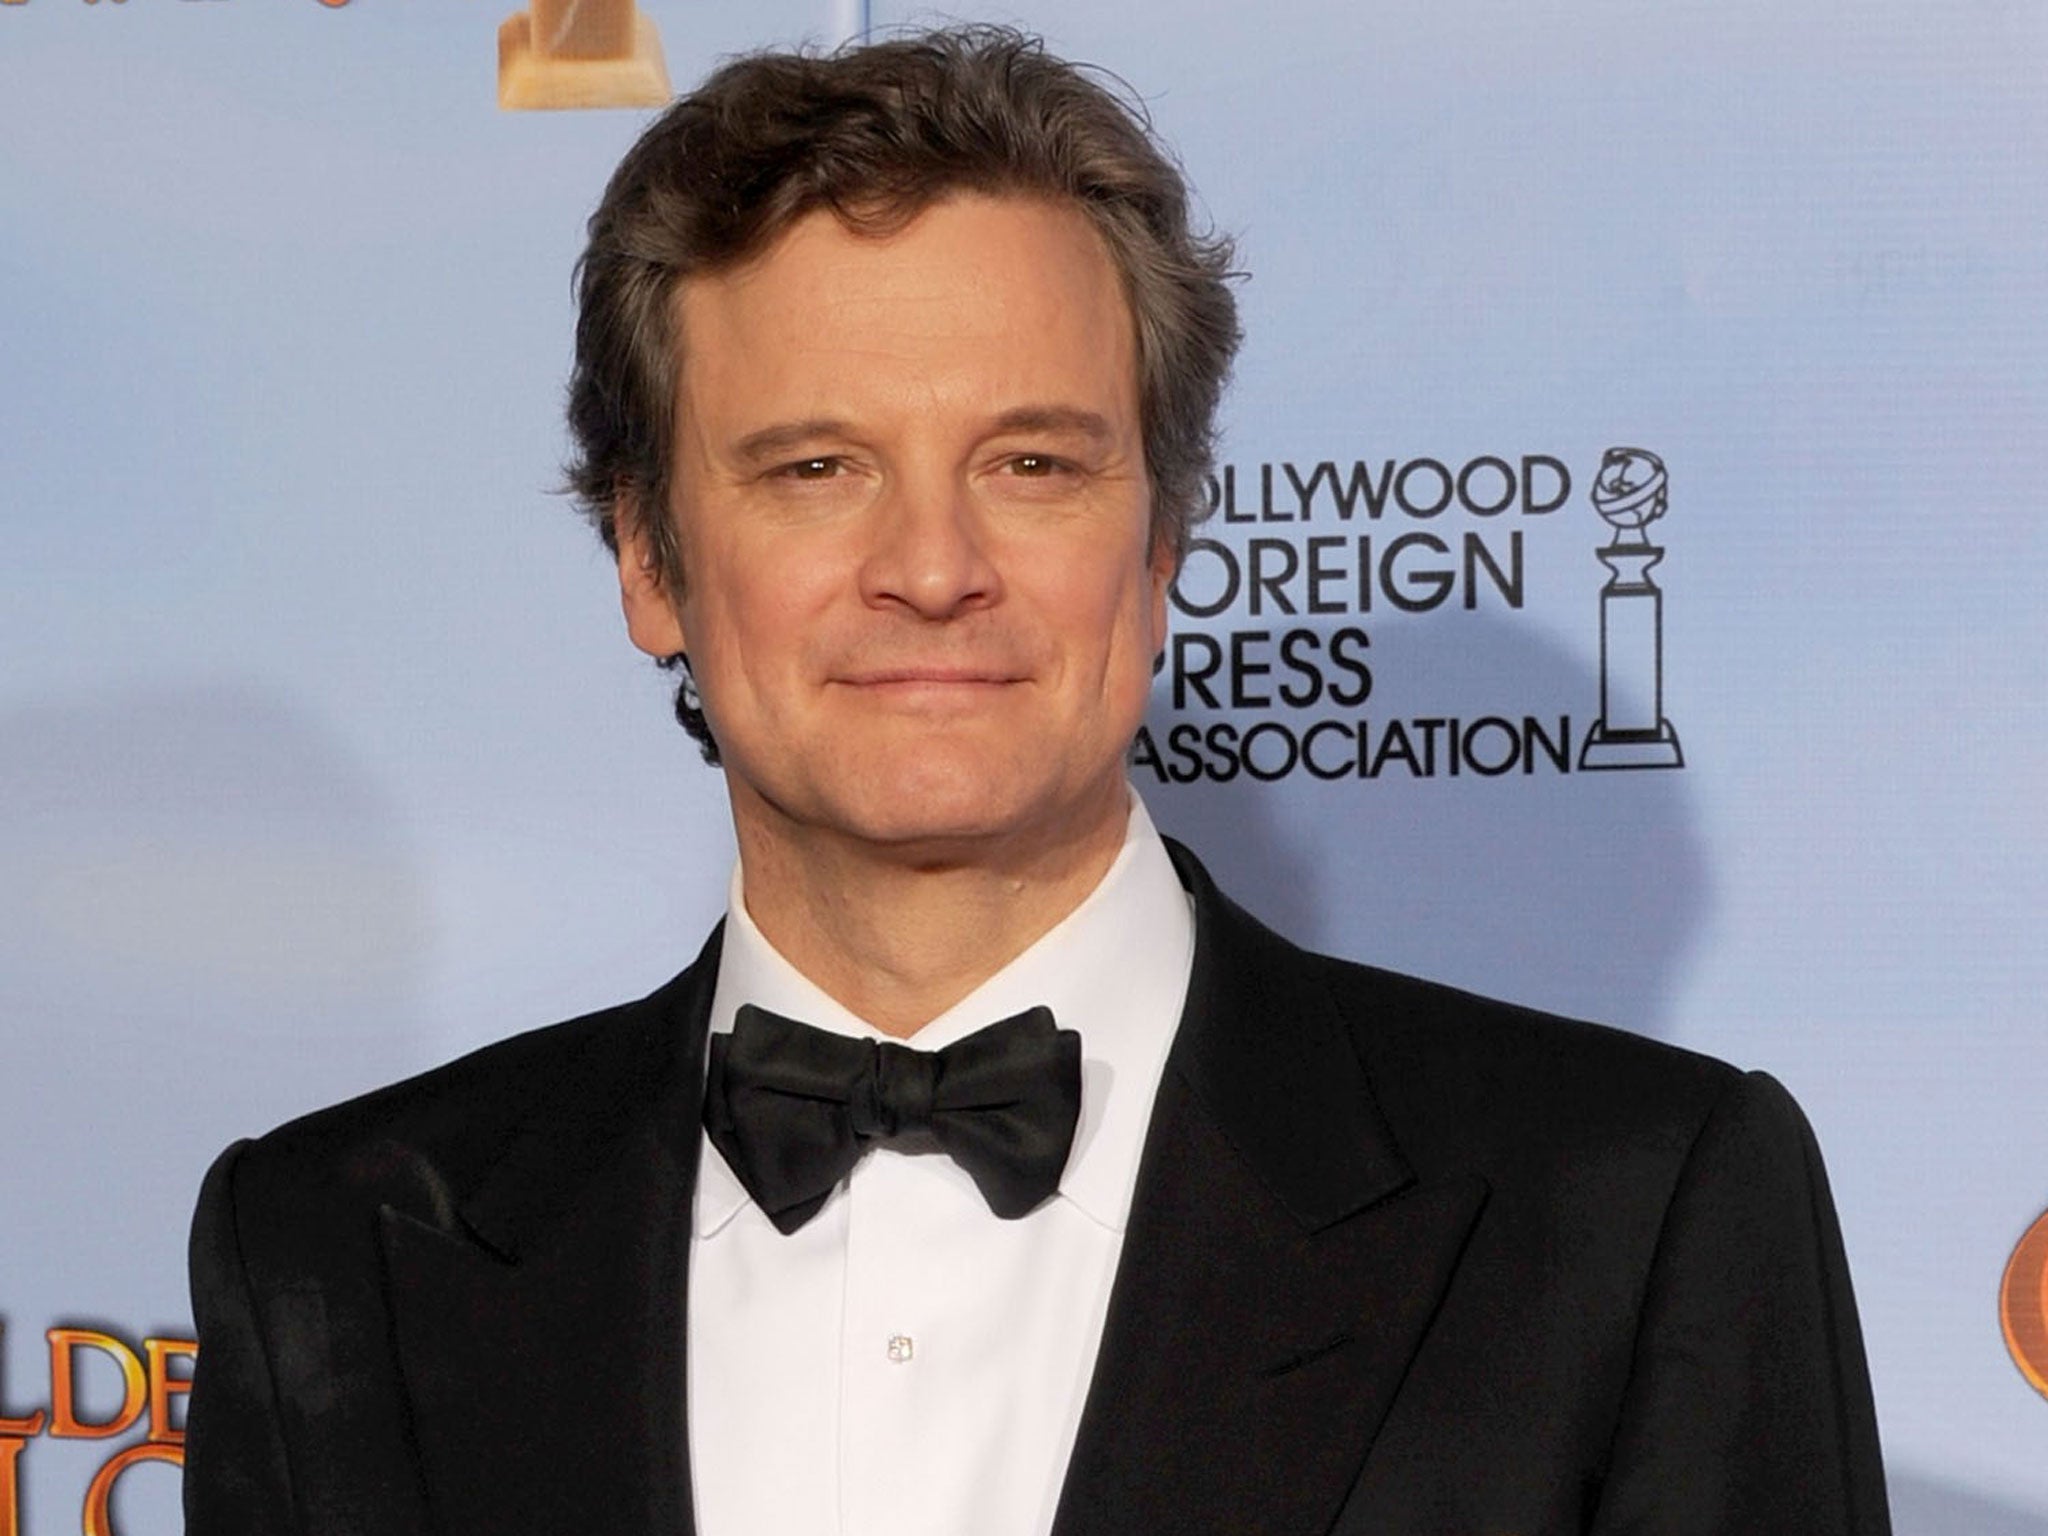 Colin Firth will voice Paddington Bear in new film